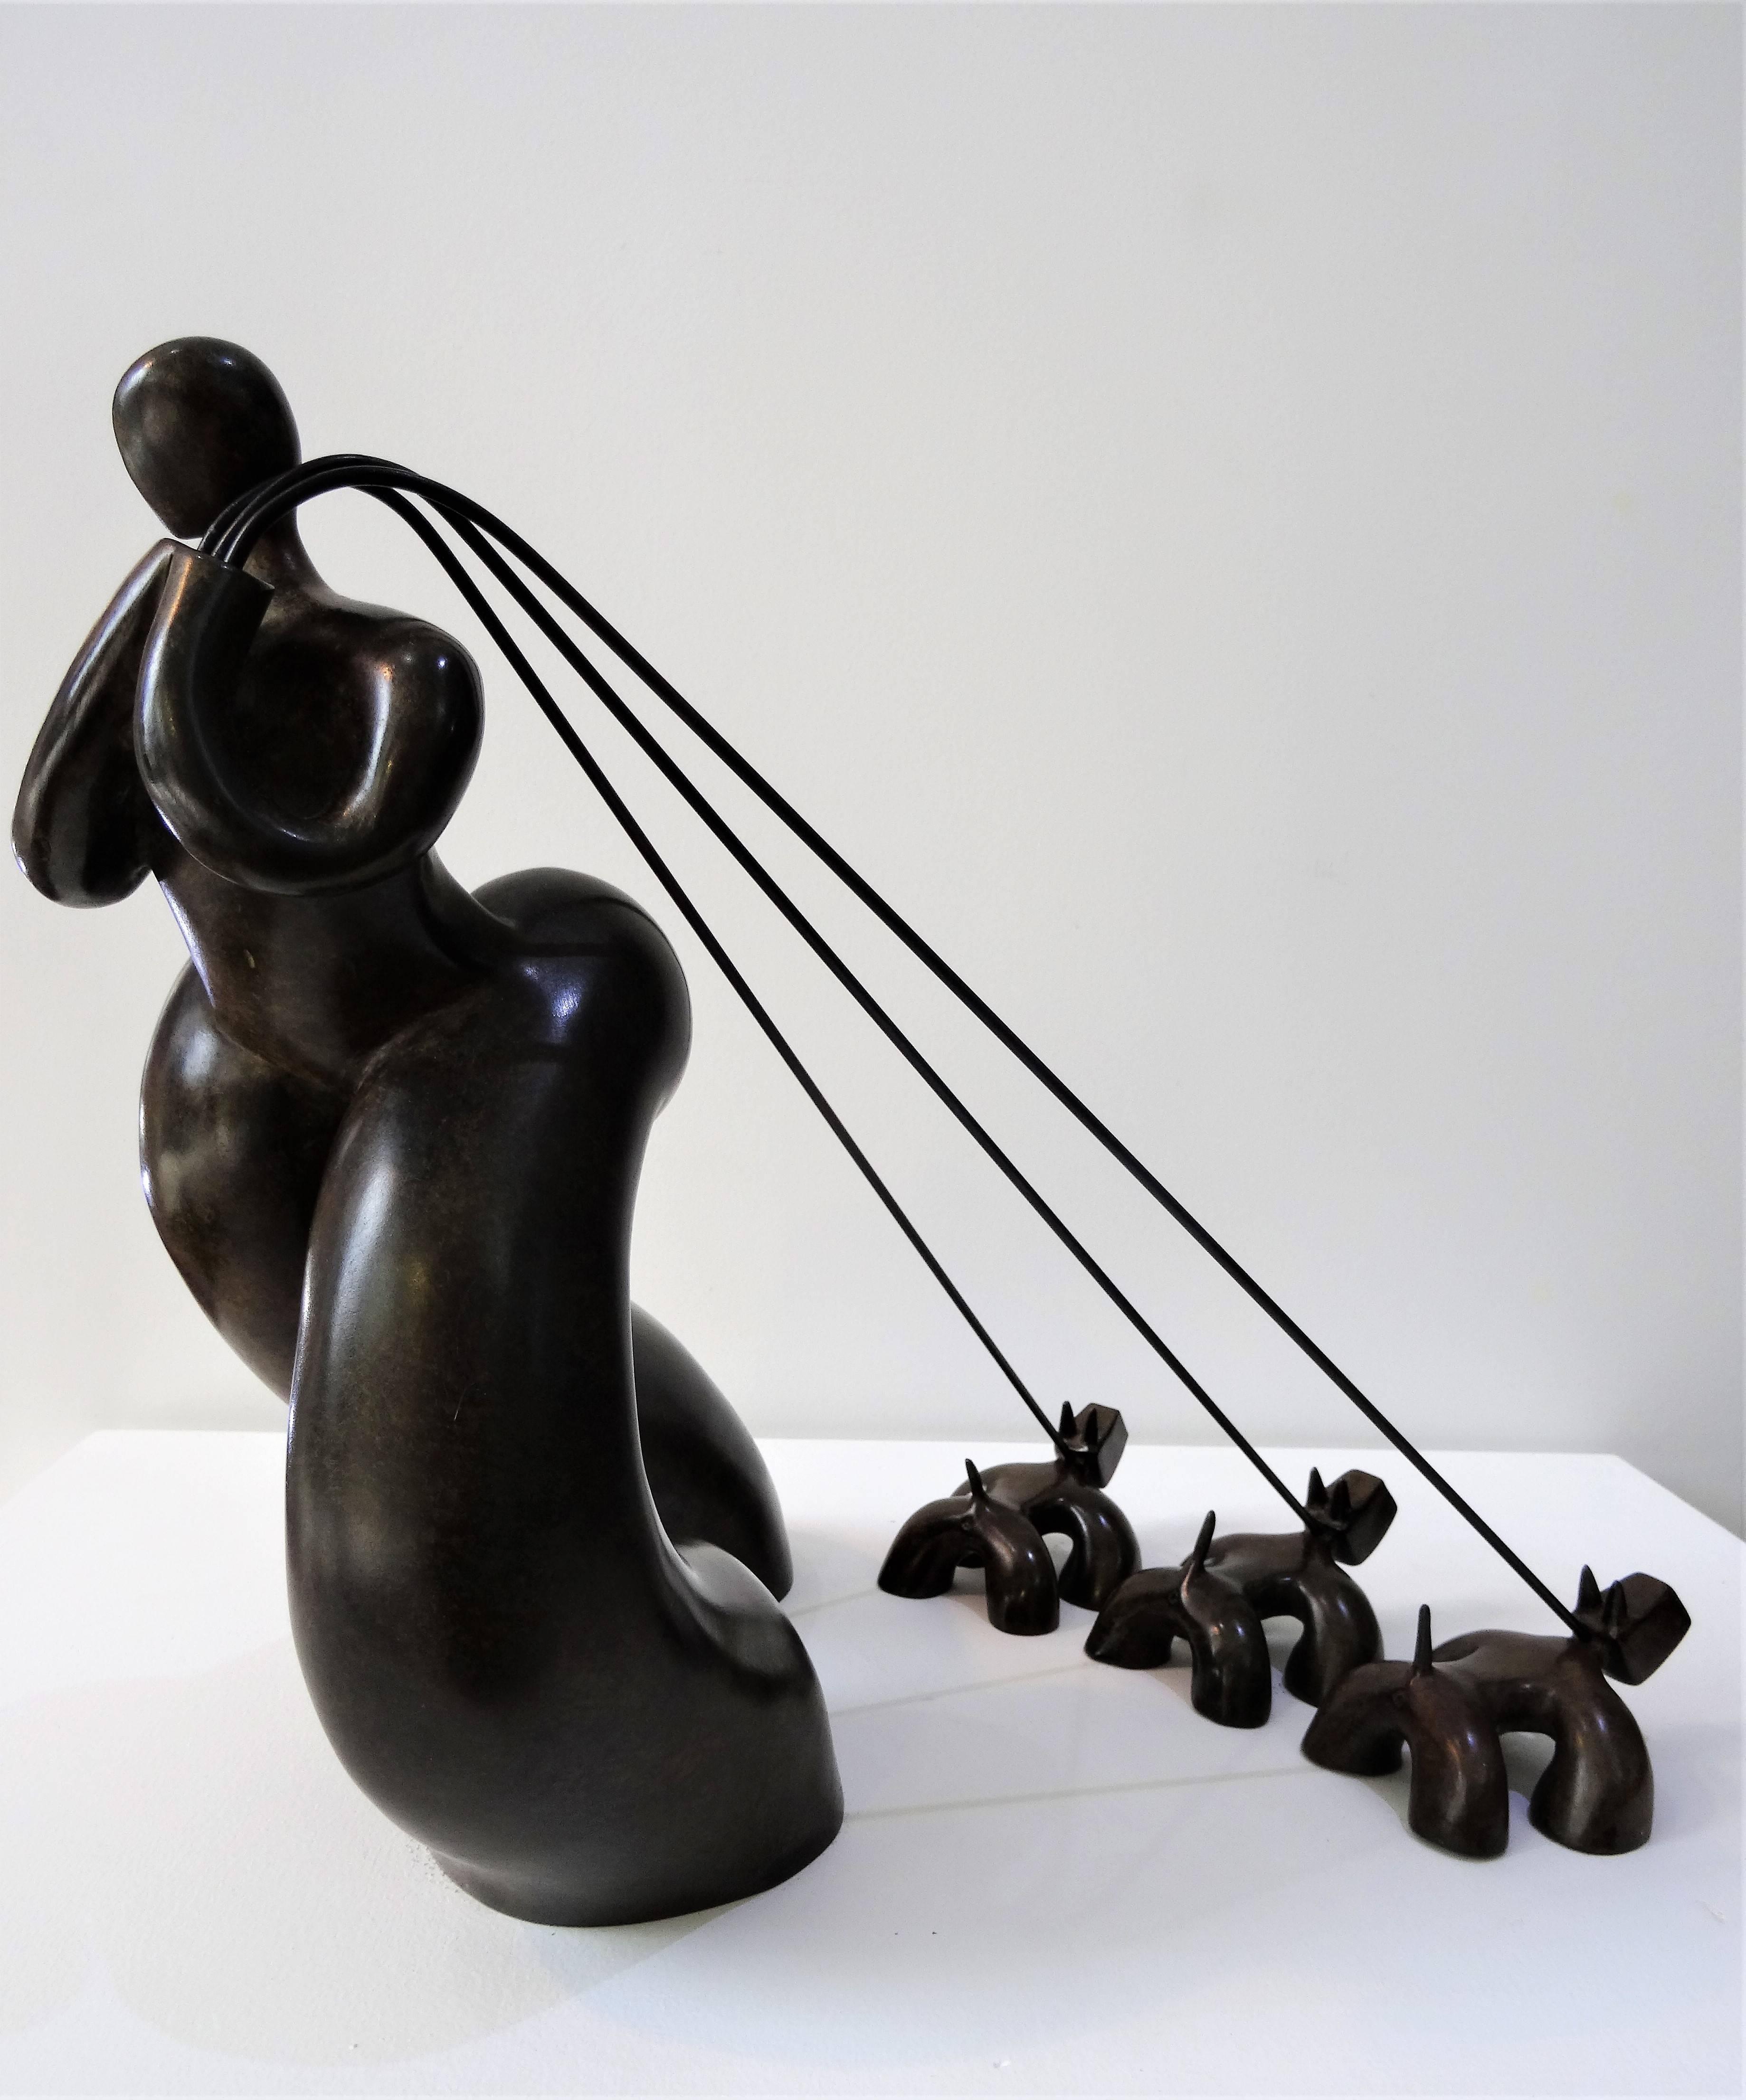 Femme Aux Trois Chiens - Sculpture by Lolek